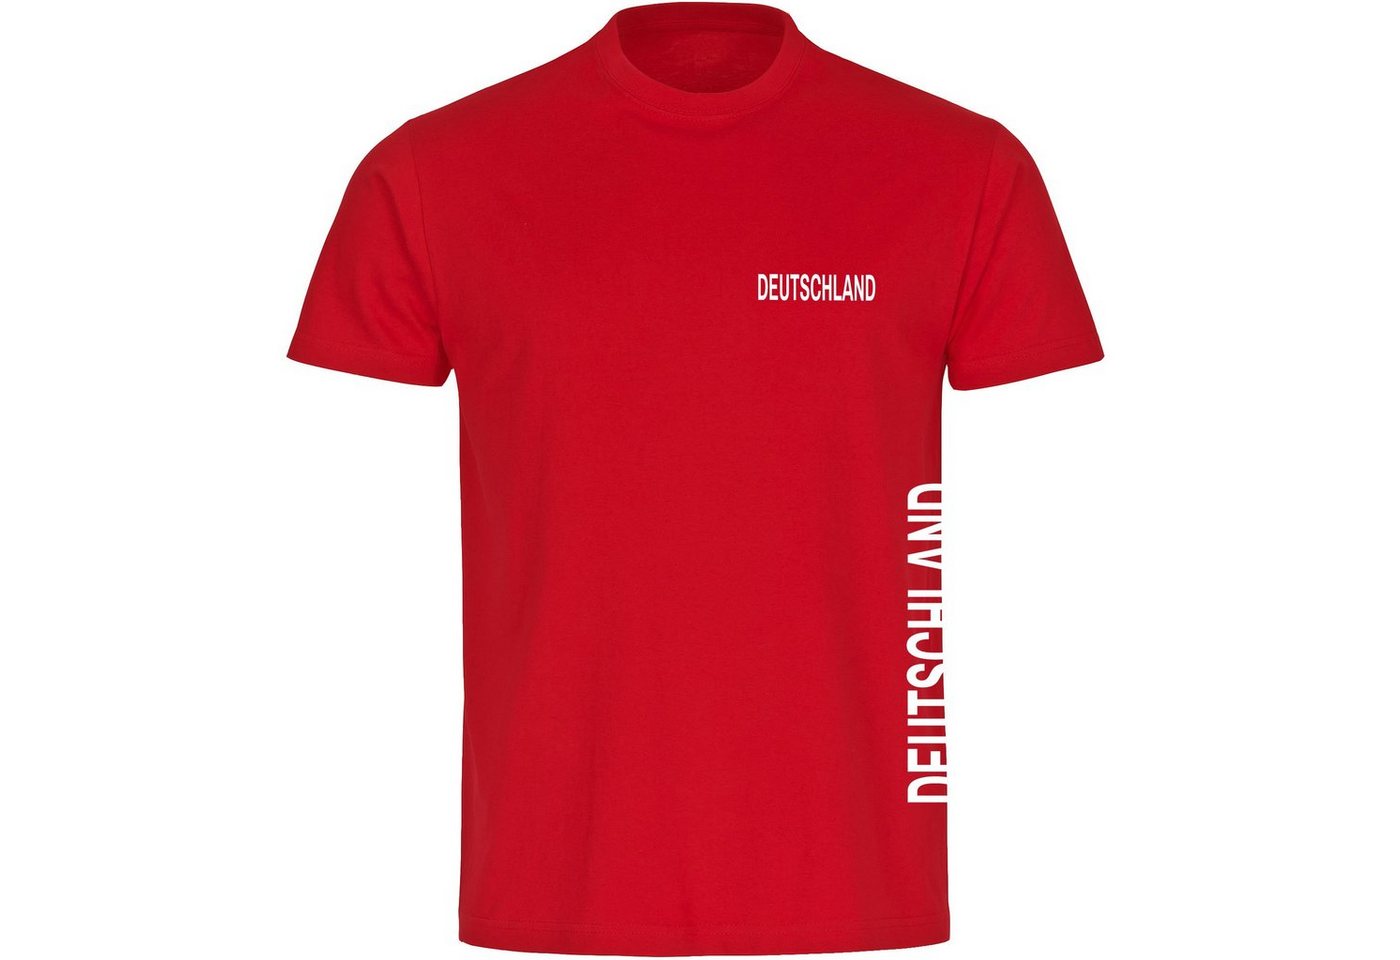 multifanshop T-Shirt Herren Deutschland - Brust & Seite - Männer von multifanshop